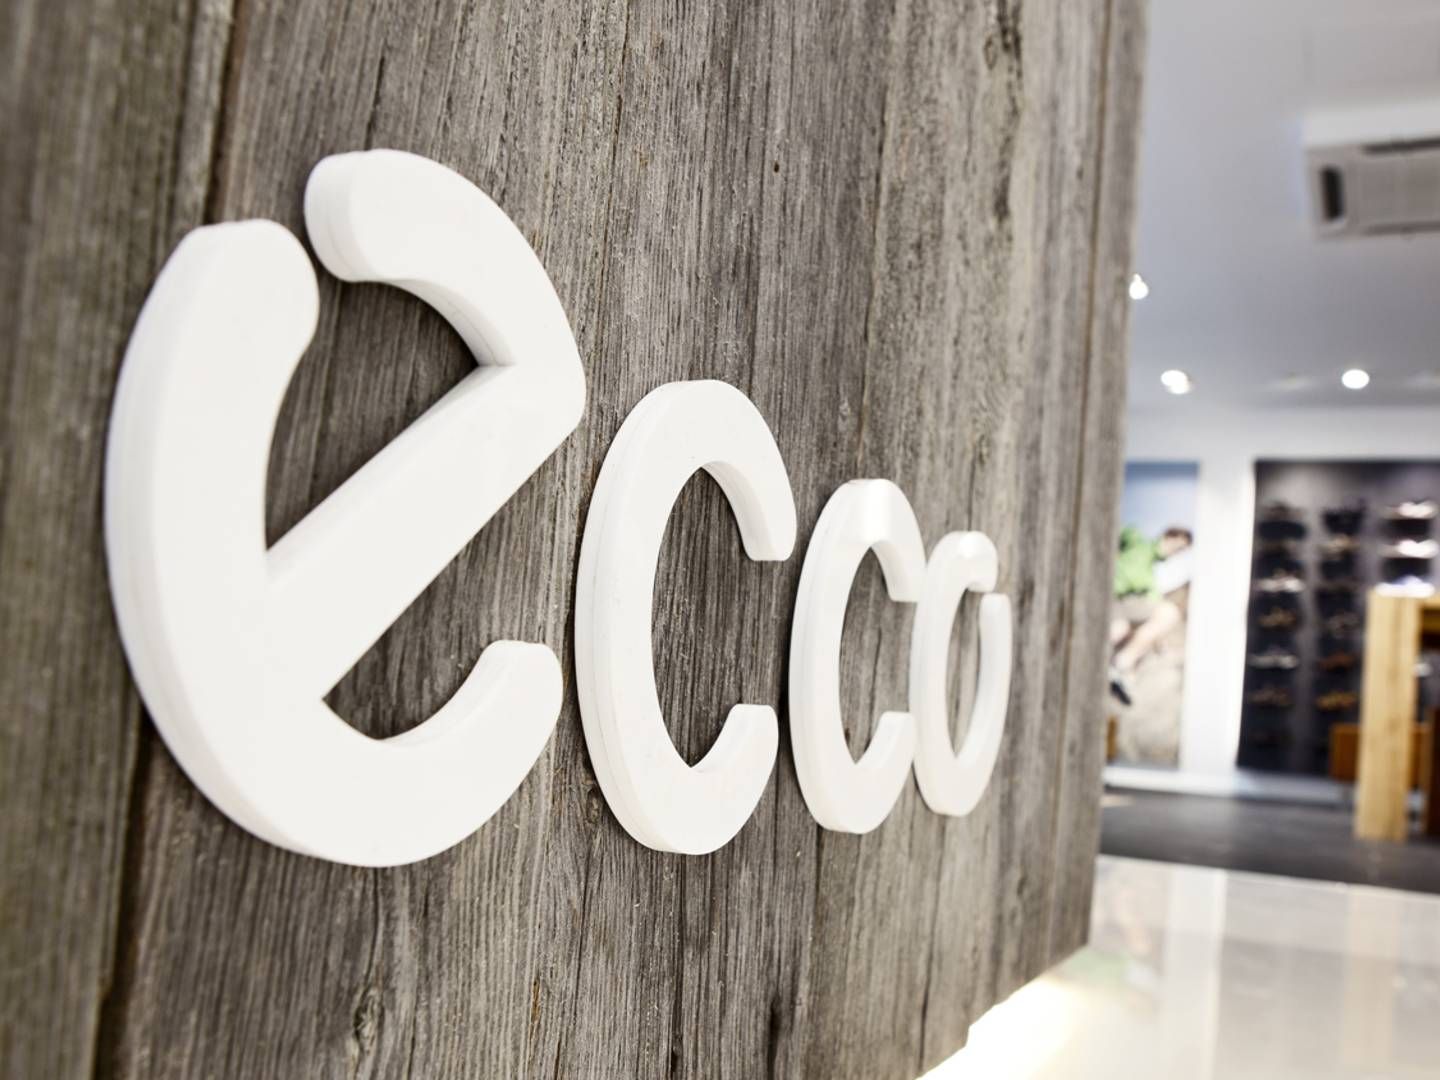 Danskerne har fået et langt mere negativt syn på Ecco, efter virksomheden har besluttet at fortsætte sine forretninger i Rusland. | Foto: PR / Ecco